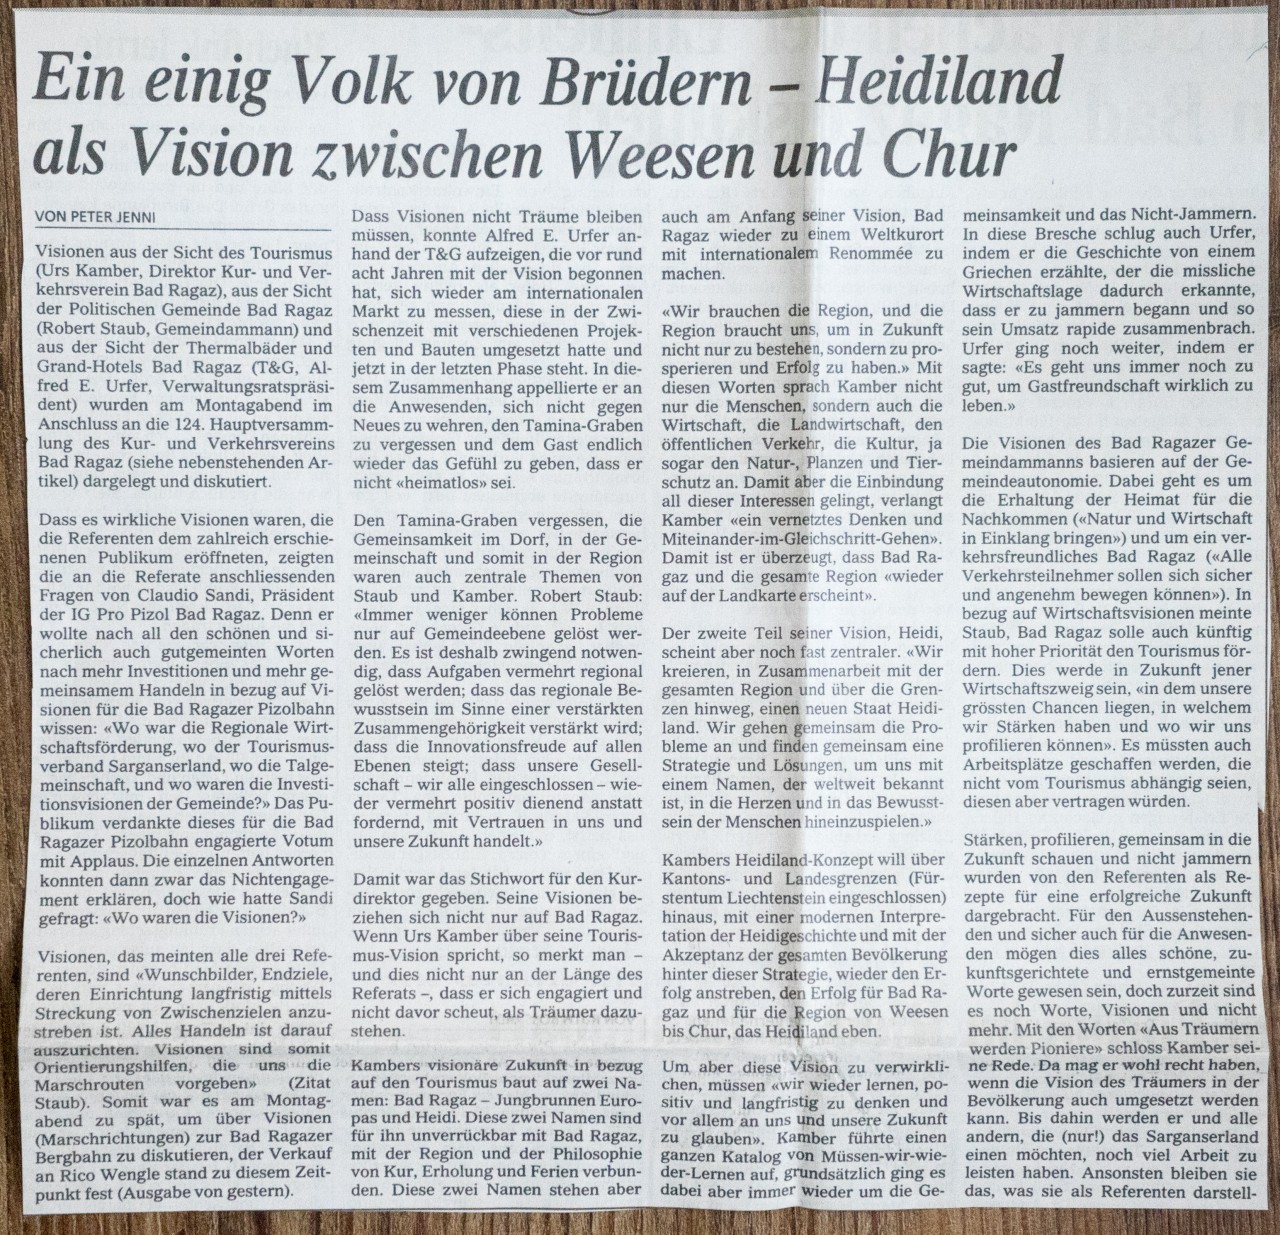 Ein einig Volk von Brüdern - Heidiland als Vision zwischen Weesen und Chur